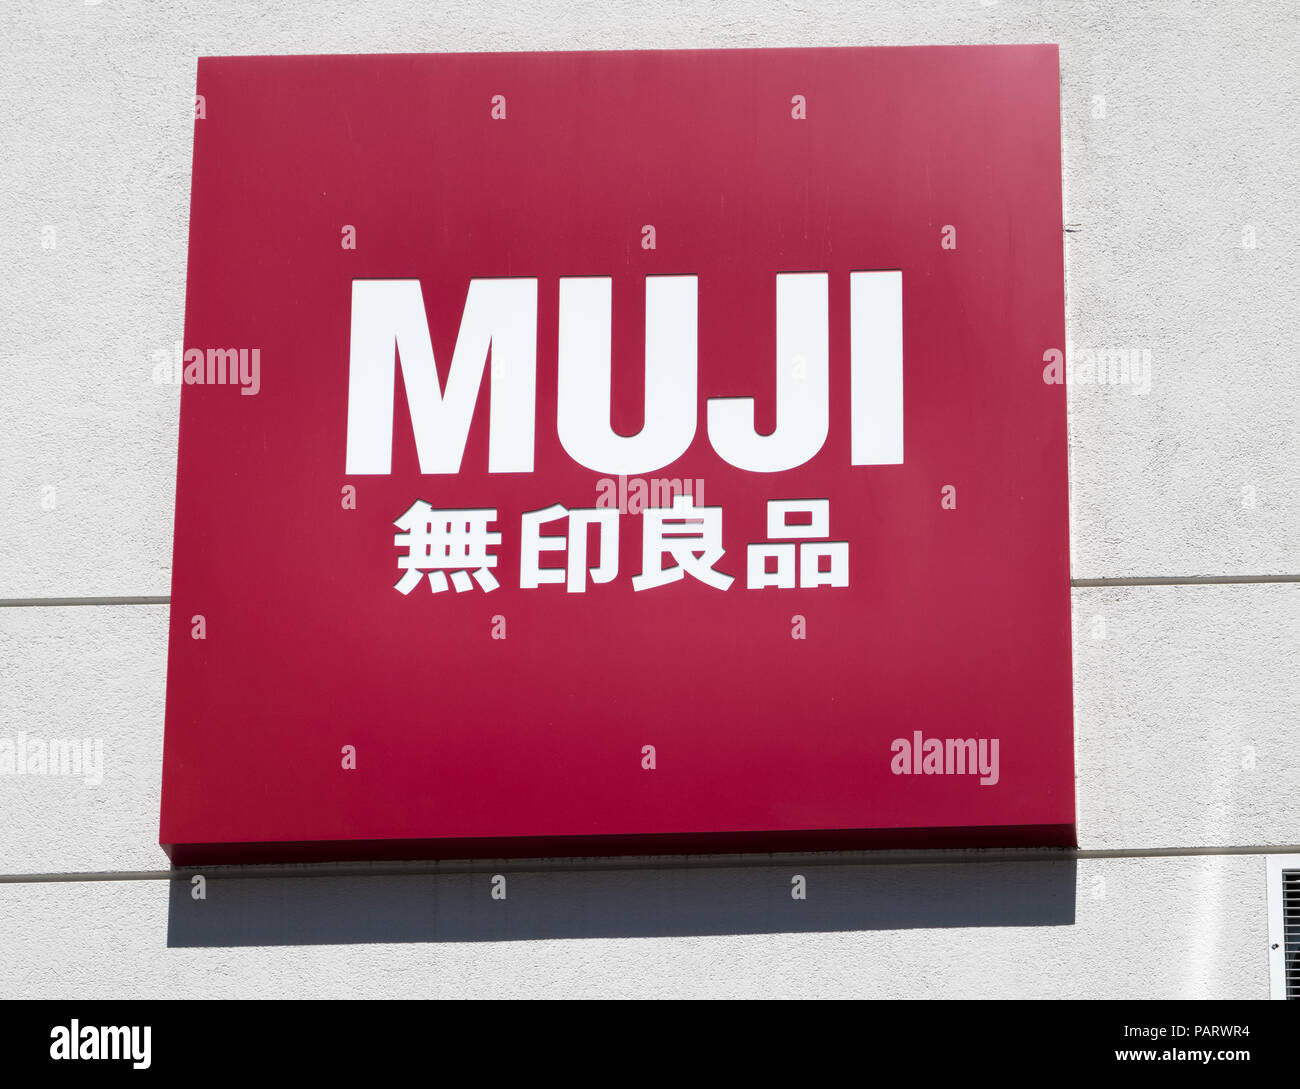 Muji shop store logo sign, UK Stock Photo